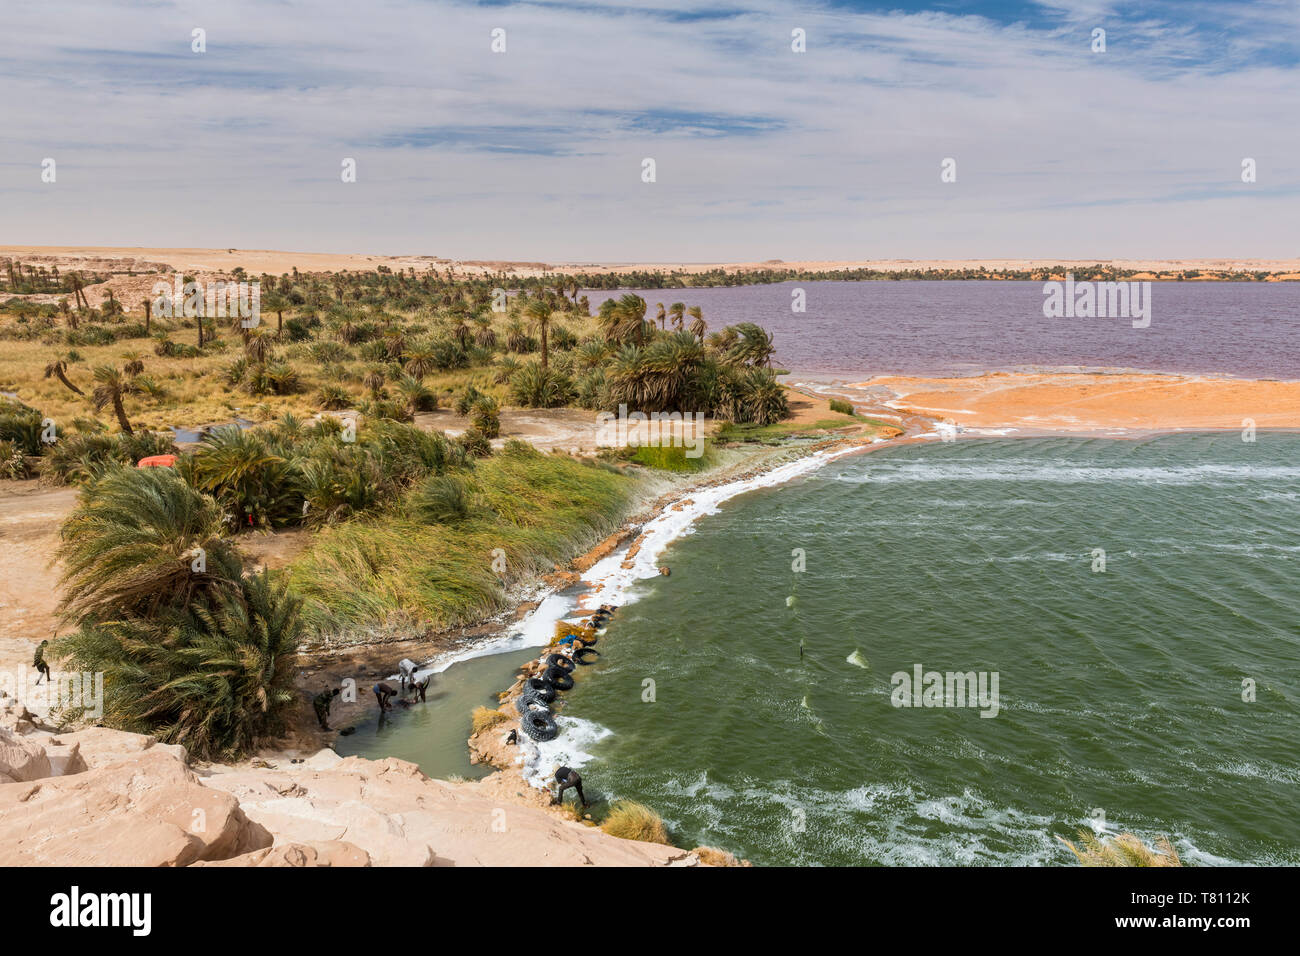 Deux couleurs lake, une partie de l'Ounianga lacs, Site du patrimoine mondial de l'UNESCO, le nord du Tchad, Afrique Banque D'Images